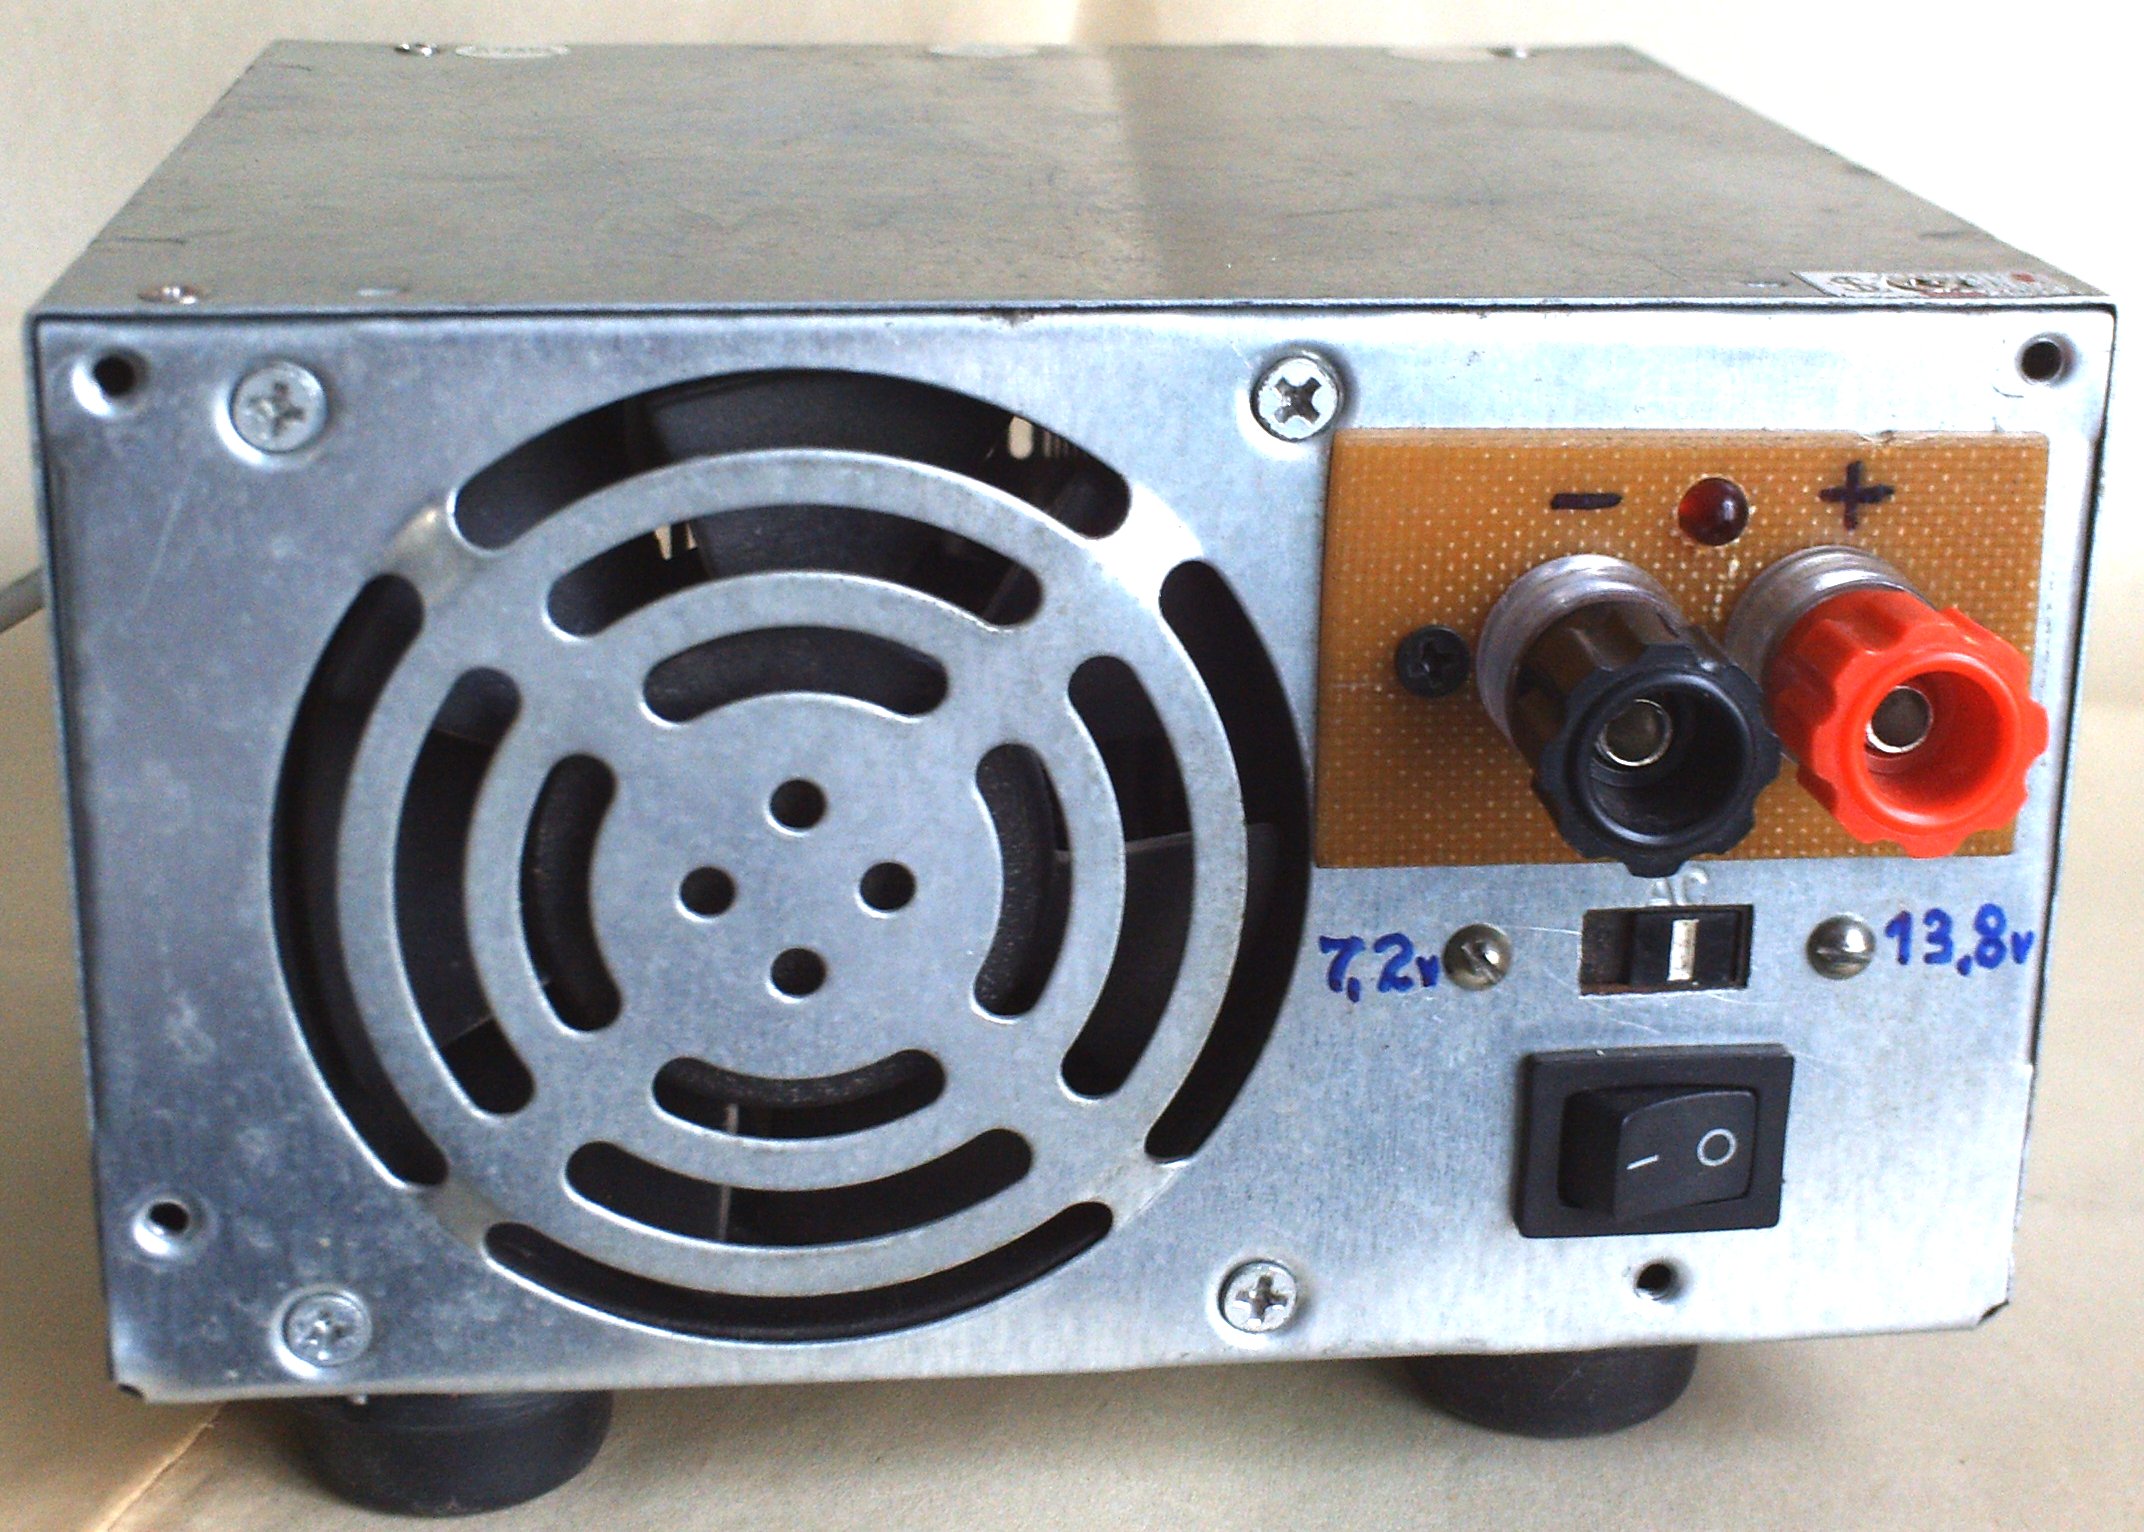 Старый блок питания. Блок питания для радиостанции 12 вольт. Блок питания радиостанции СССР 12 вольт. Rjvgm.nthysq блок питания to-300 a для трансивера. Переделка компьютерного блока питания для трансивера.